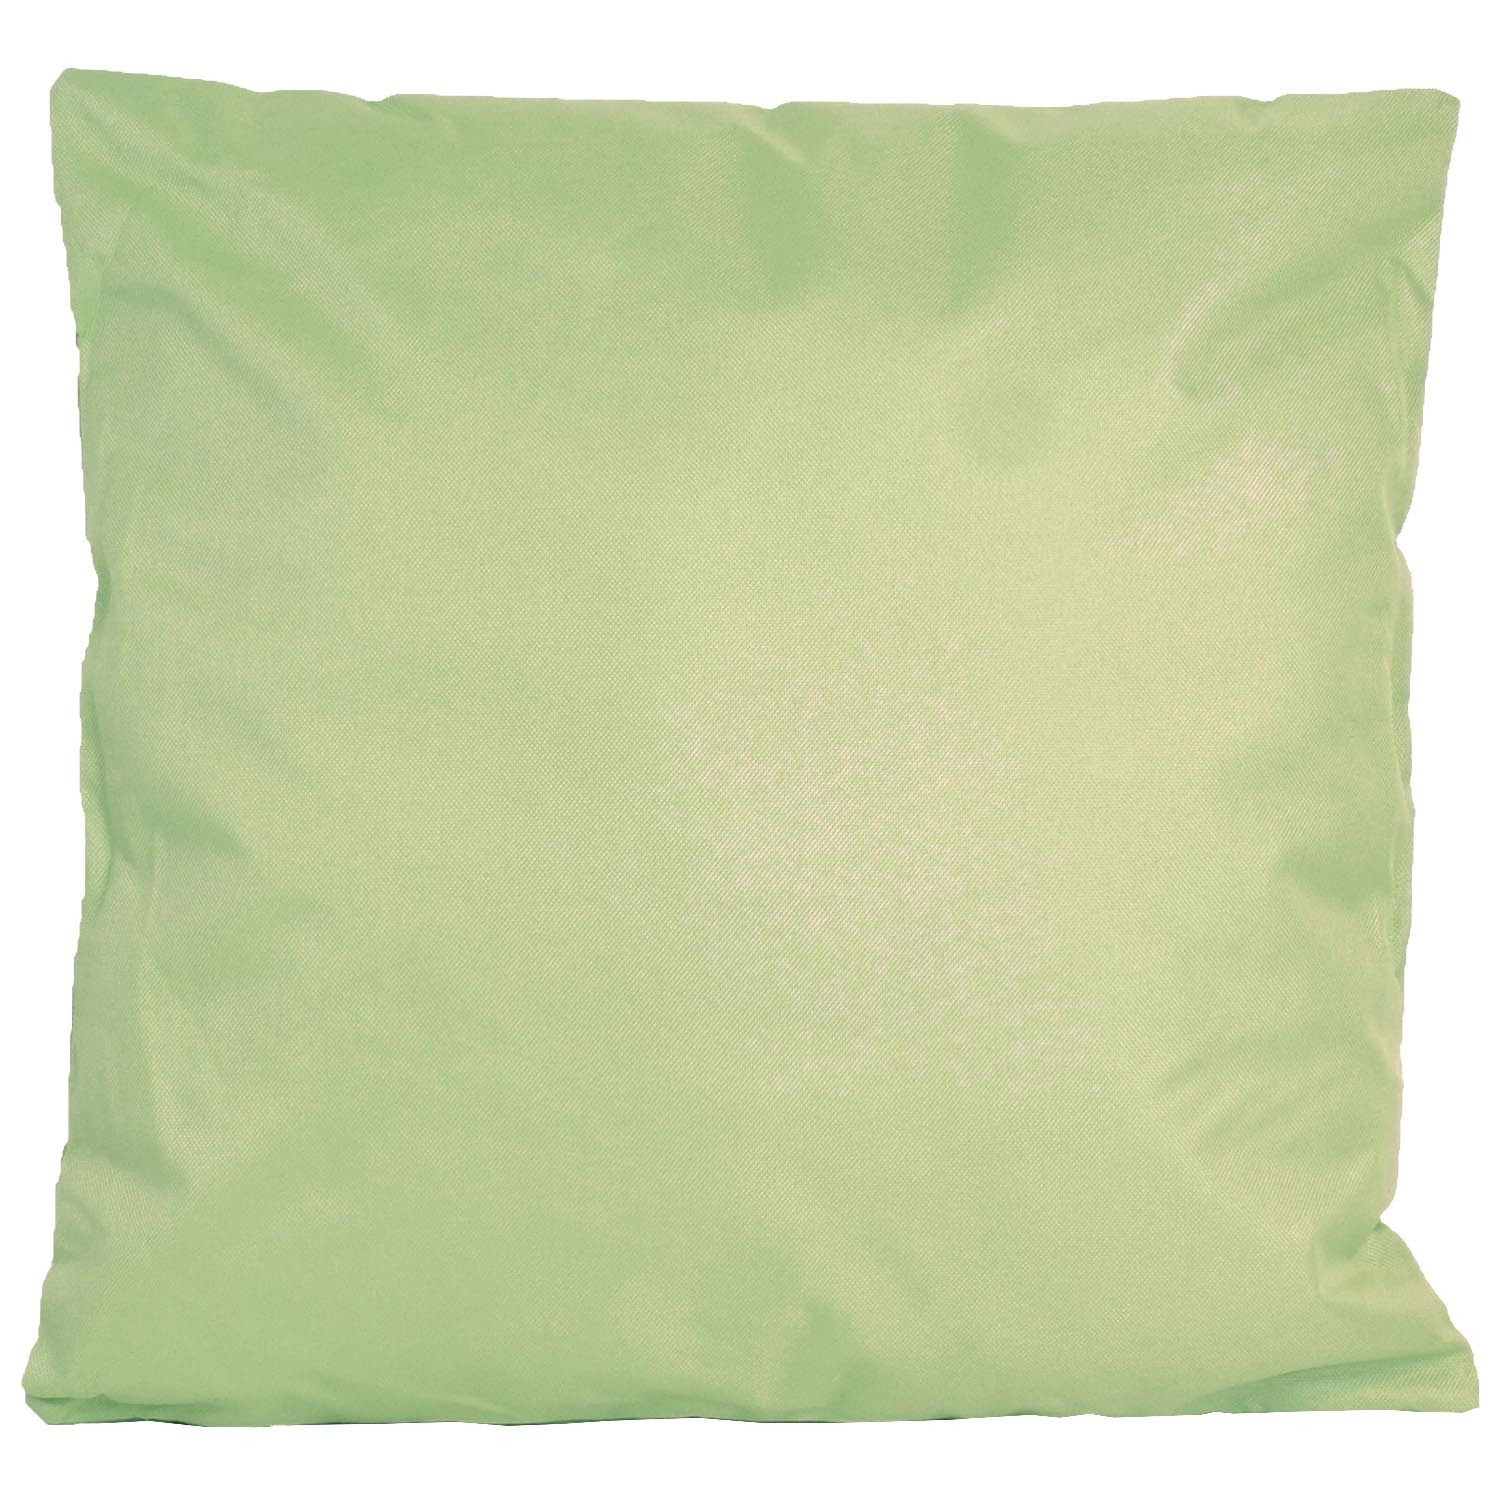 1x Bank-sier kussens voor binnen en buiten in de kleur mint groen 45 x 45 cm